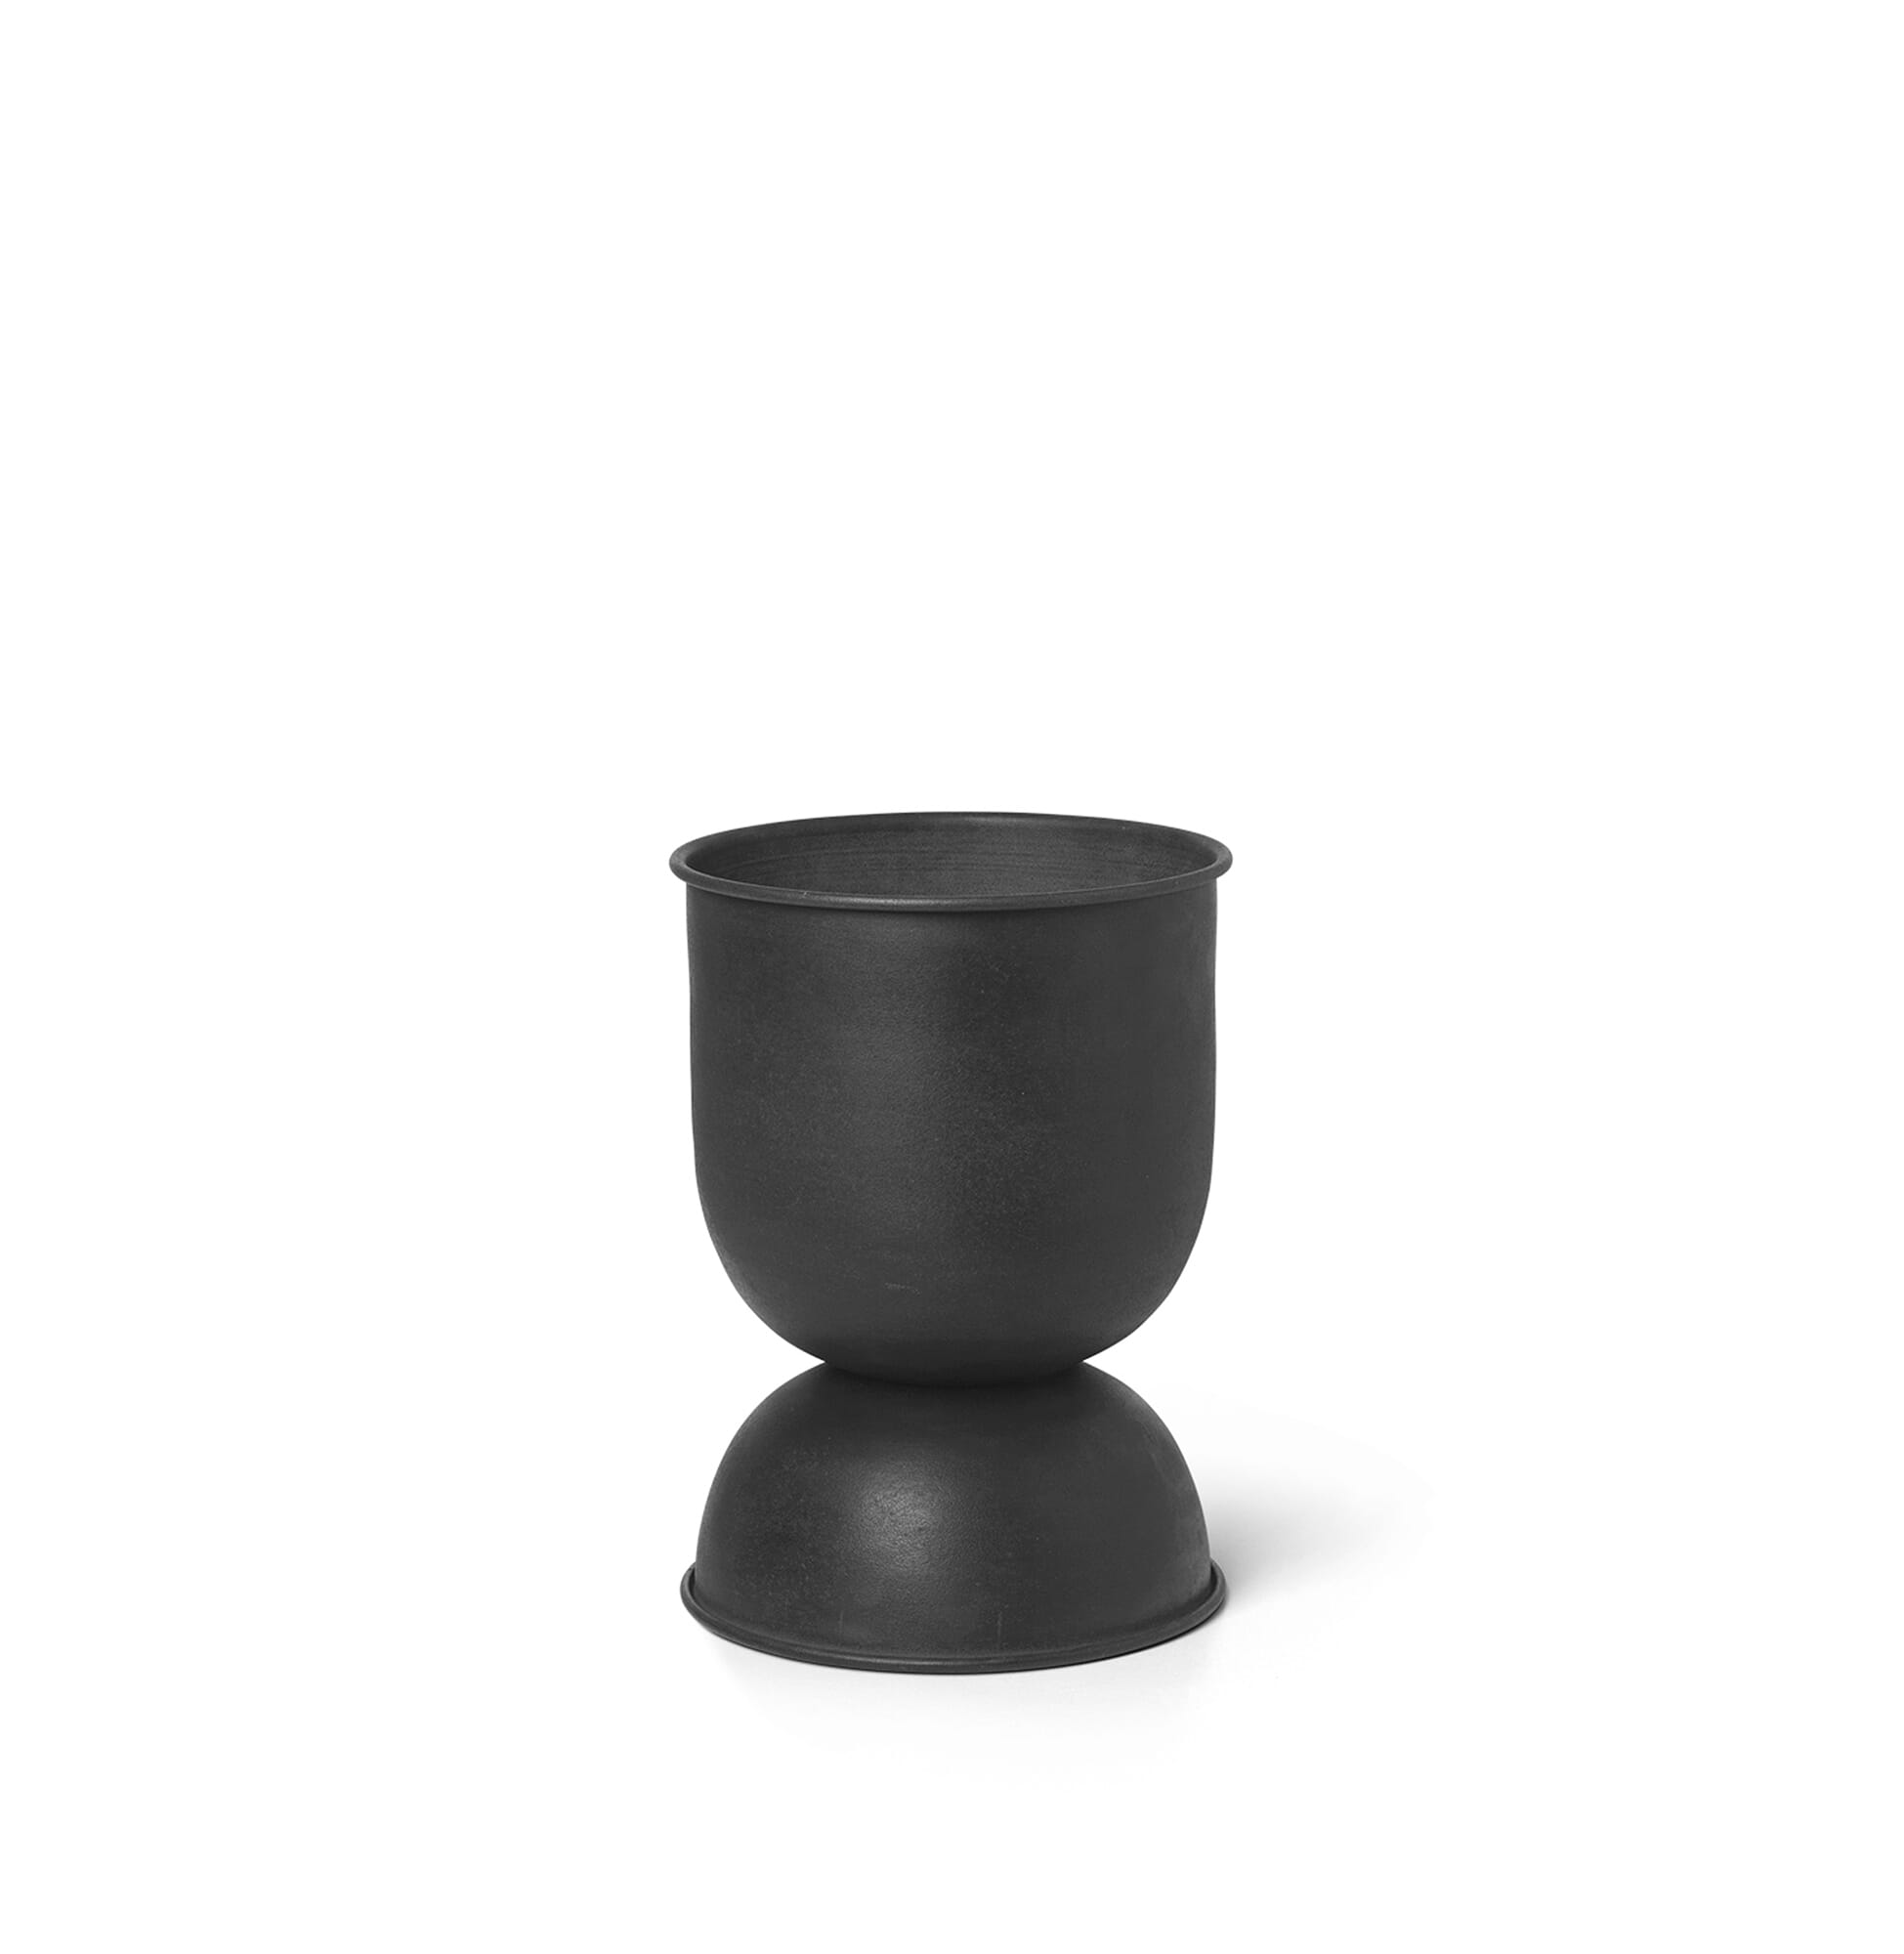 Bilde av Ferm Living - Ferm Living Hourglass Pot Black X-small - Lunehjem.no - Interiør På Nett